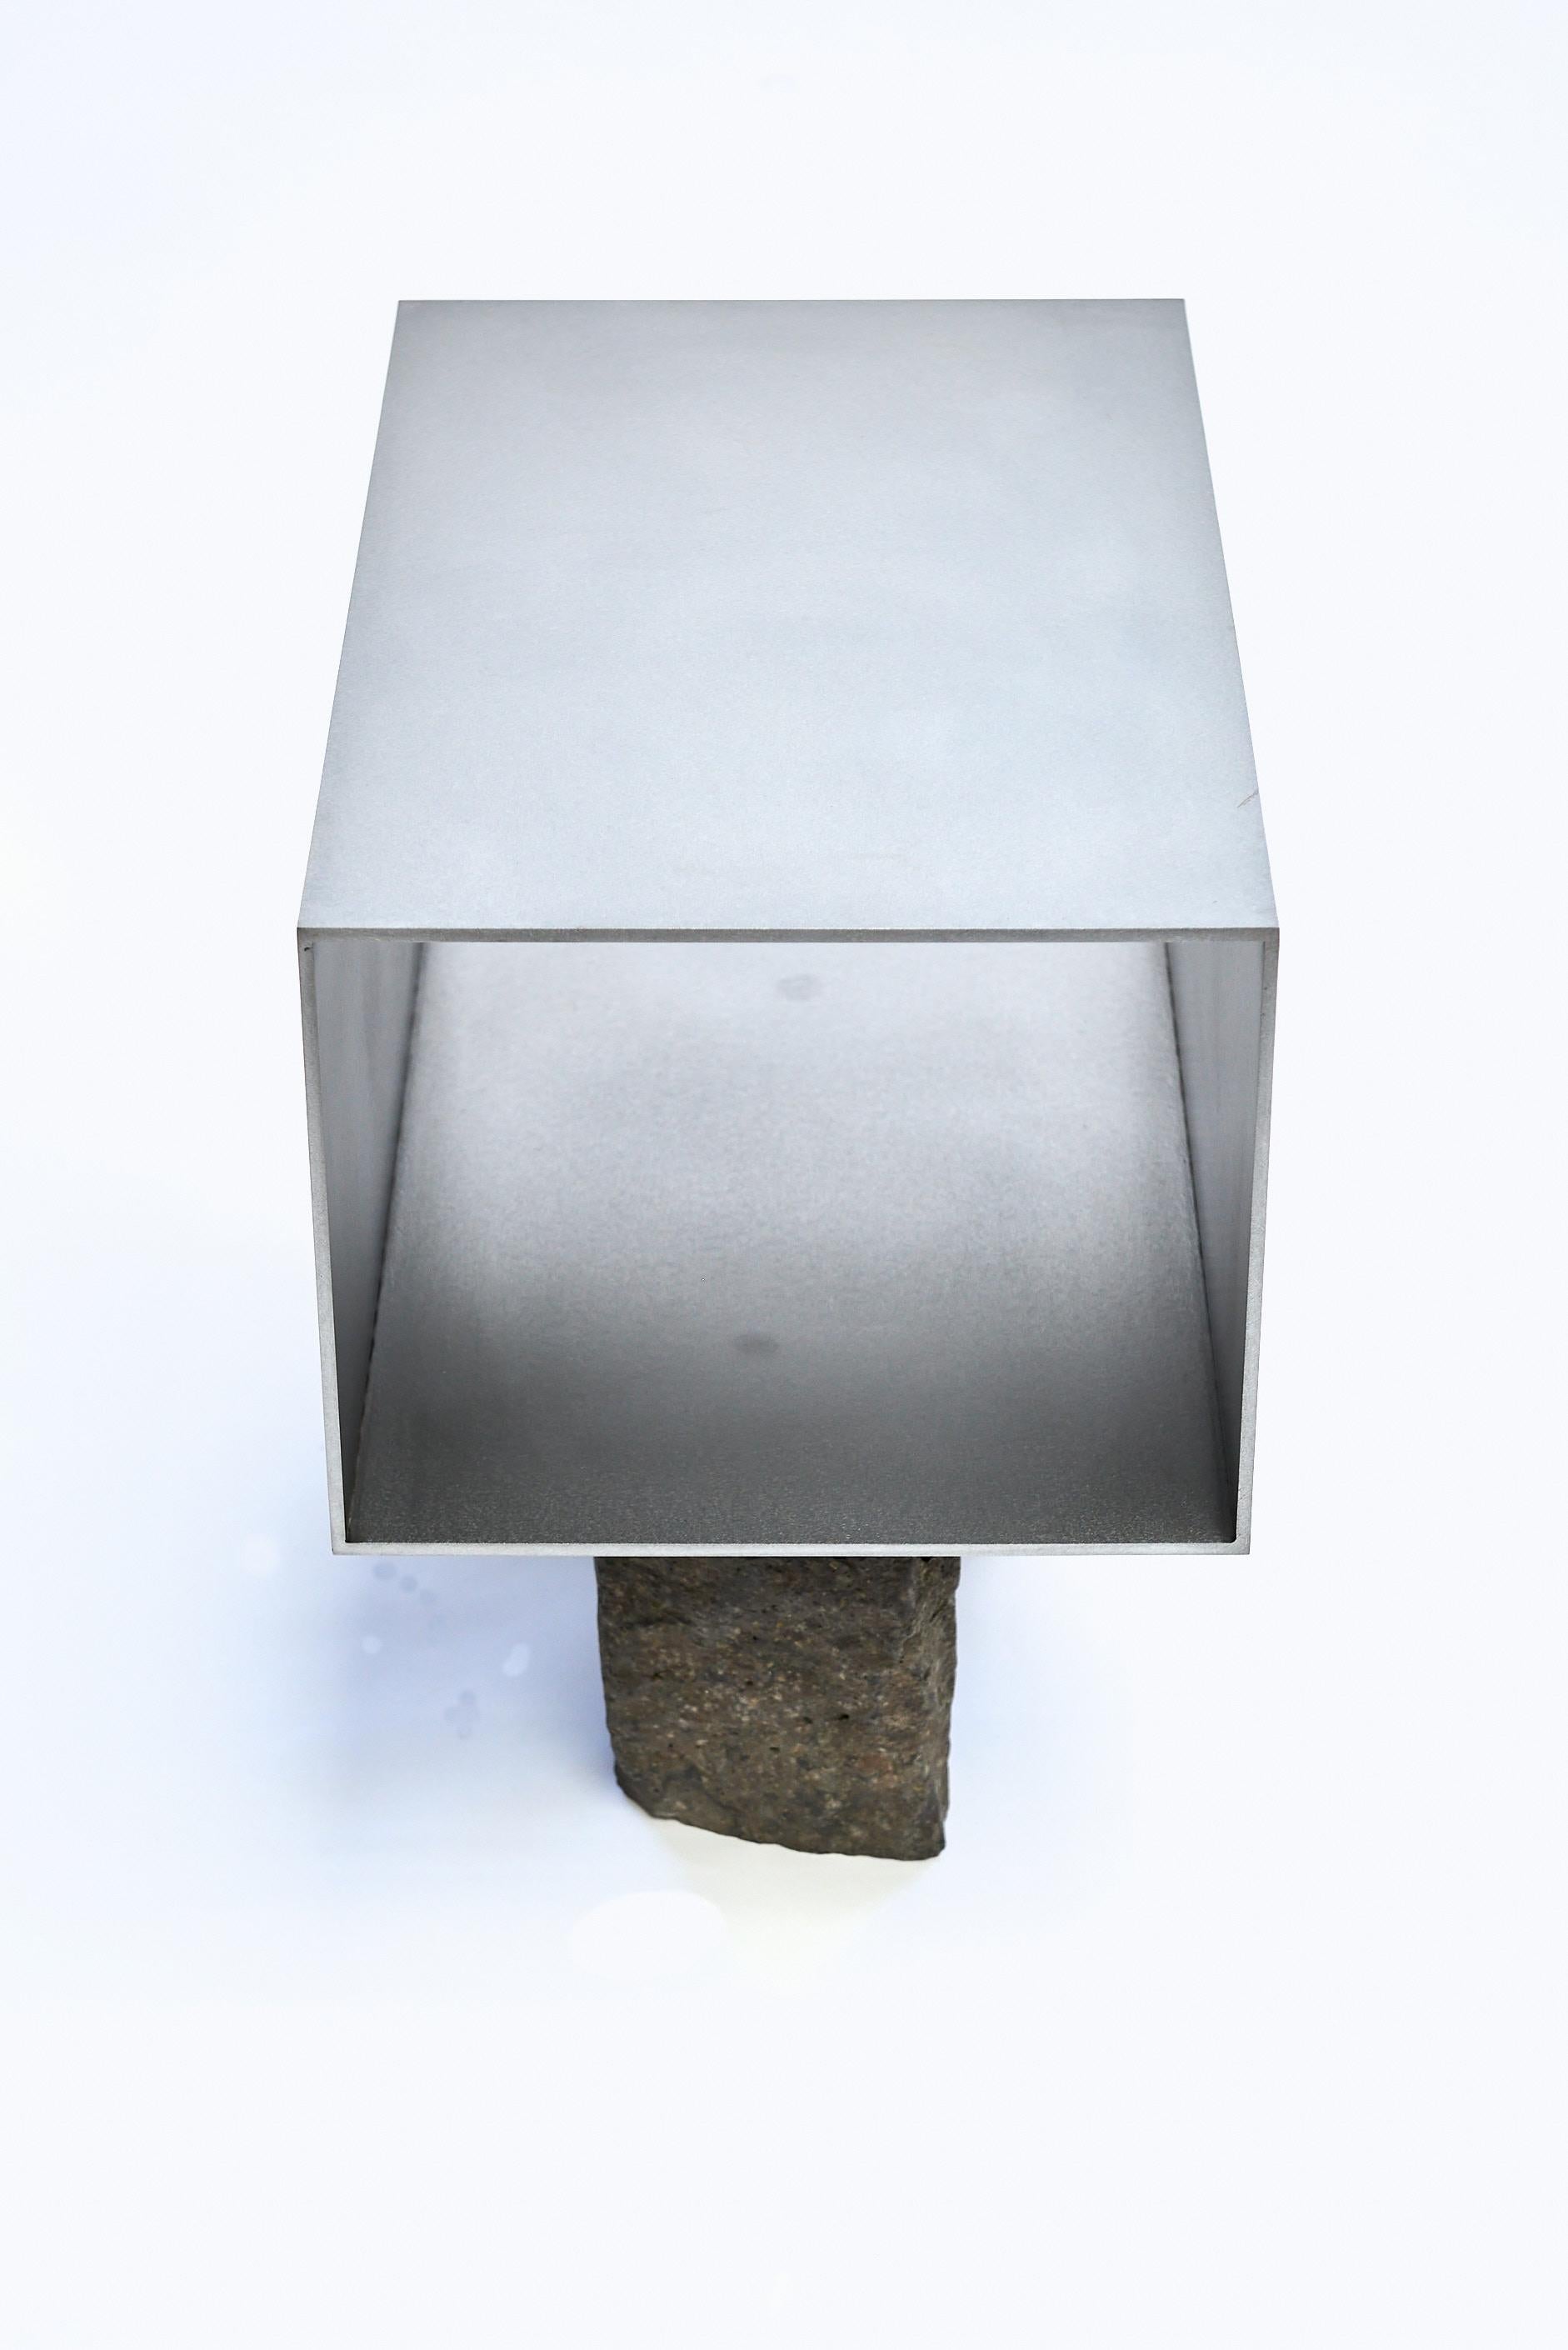 Steel Sculptural side table 'Beam Basalt', by Frank Penders For Sale